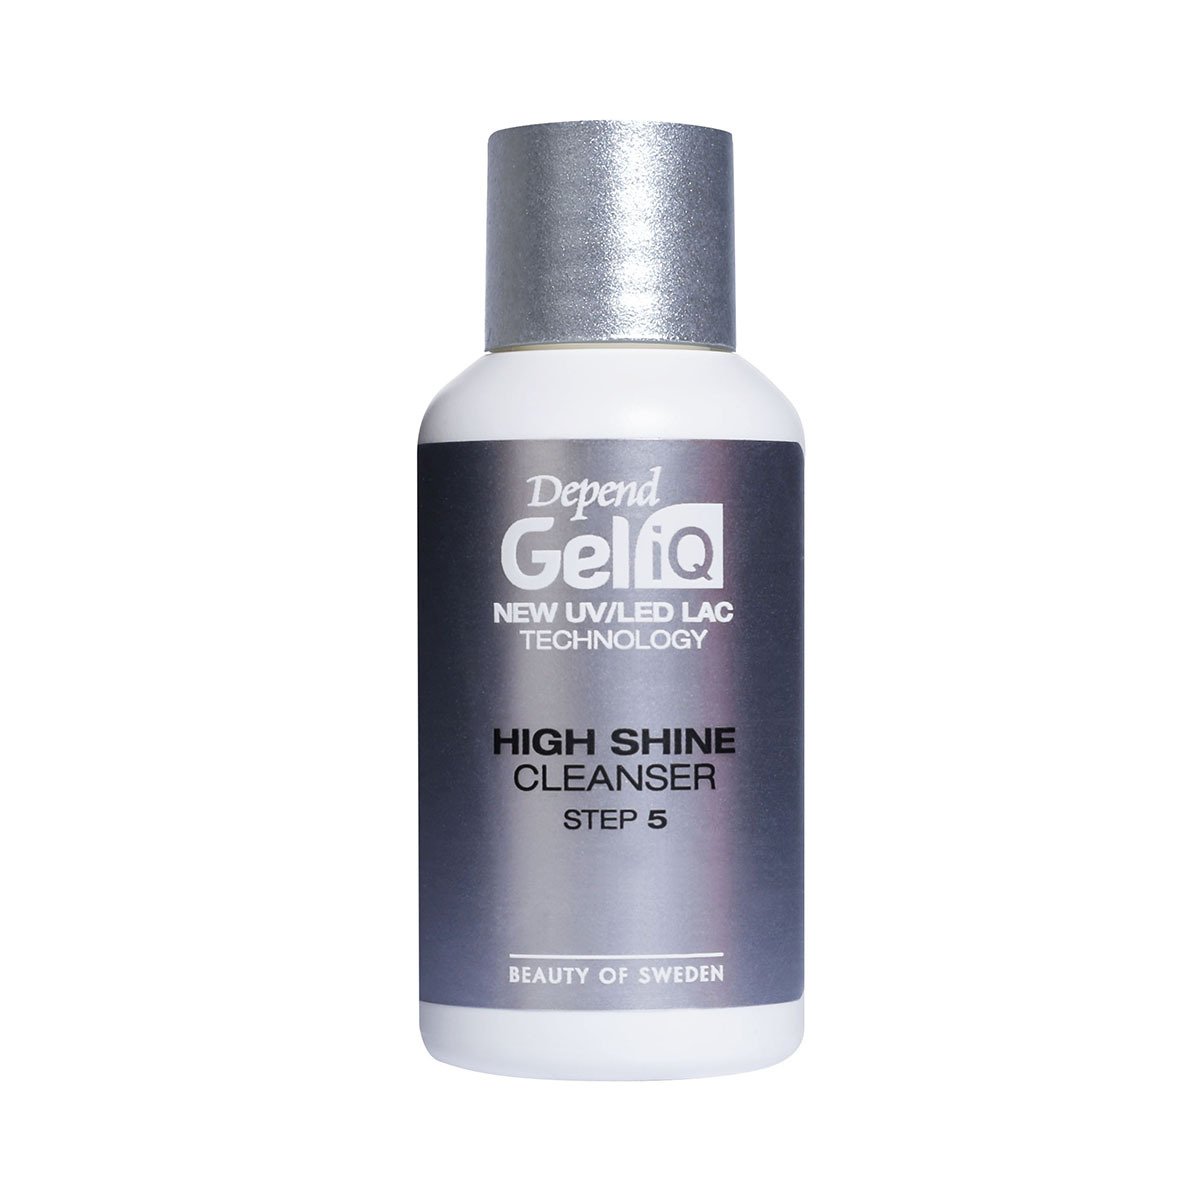 Depend Gel iQ High Shine Cleans Steg 5 35ml